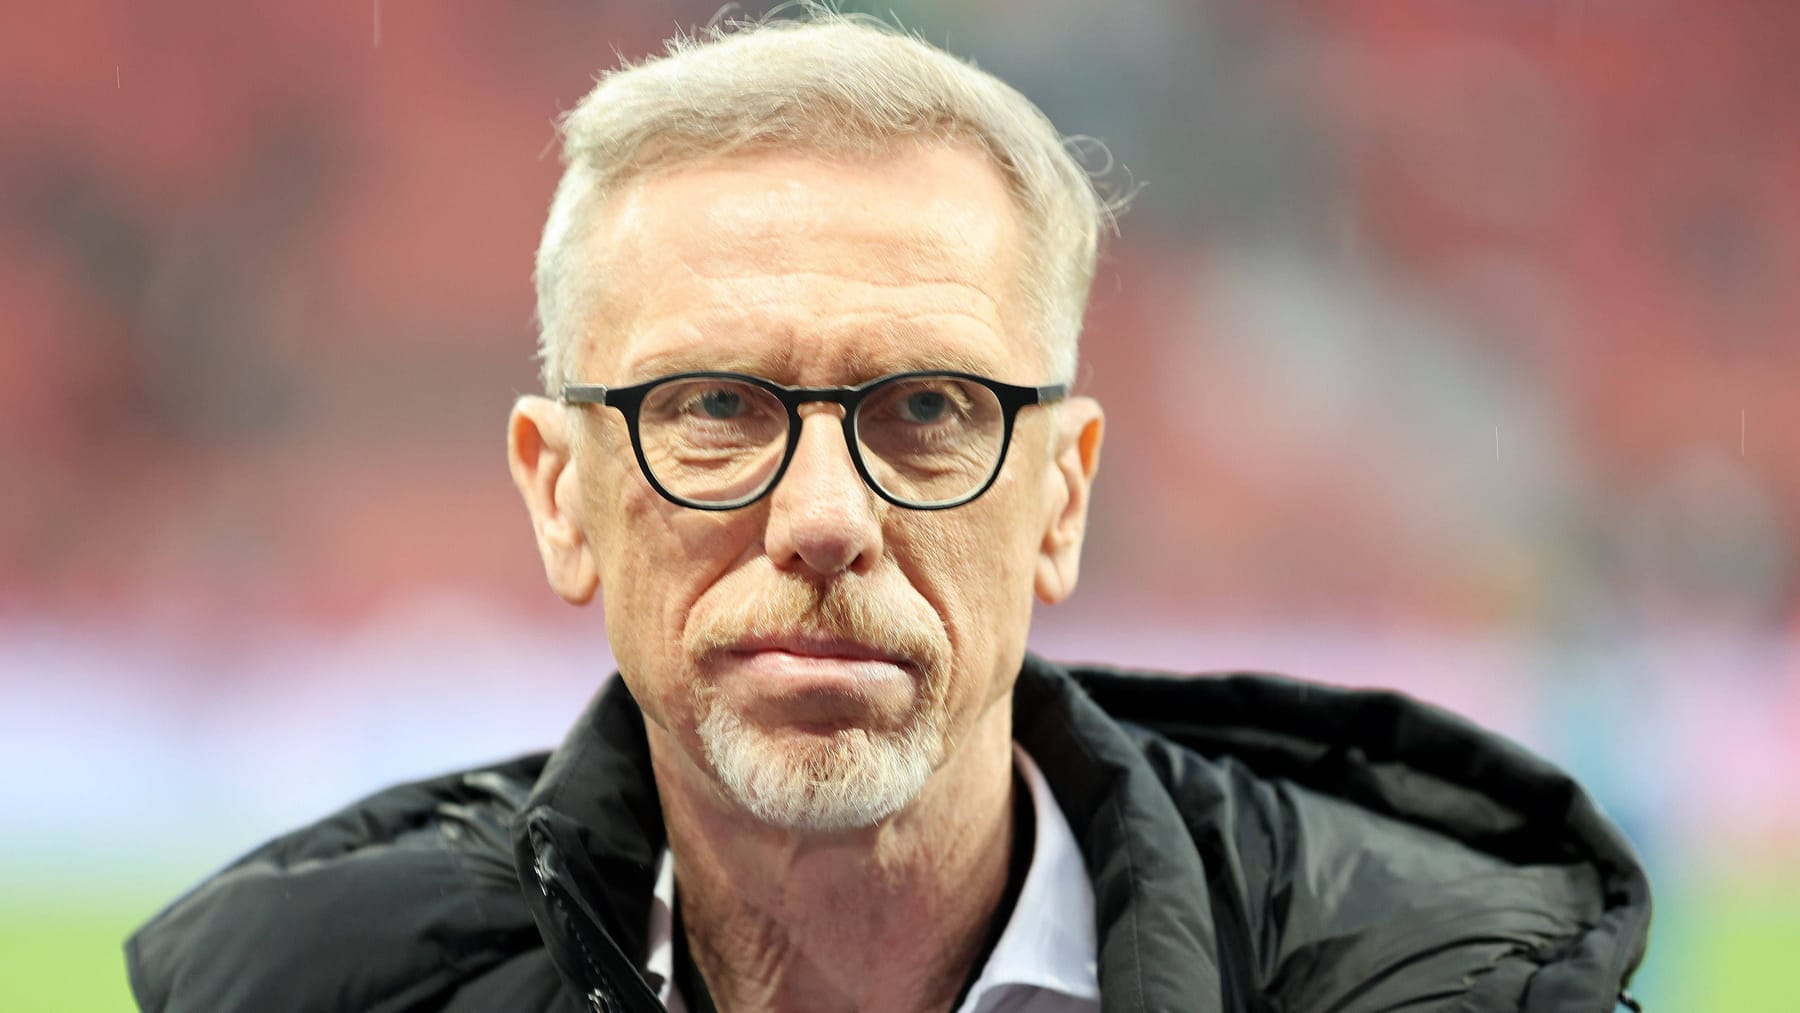 El ex entrenador del BVB Peter Stöger dice que el VfL Bochum ab: las carreteras son "Kurzfristigkeit"